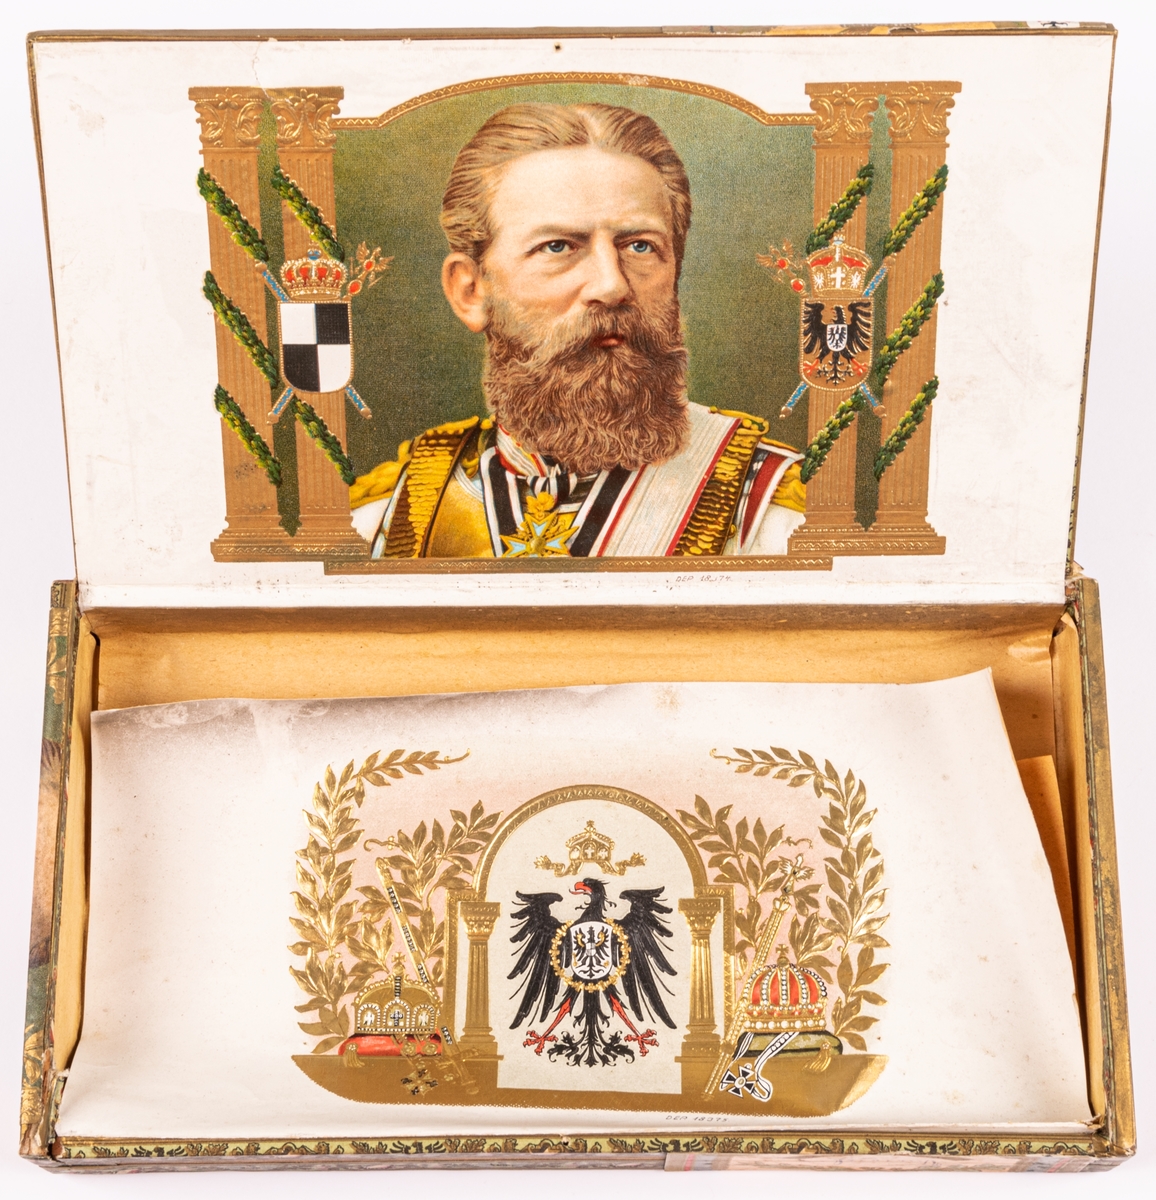 Kaiser Friedrich på etikett samt invändigt papper.